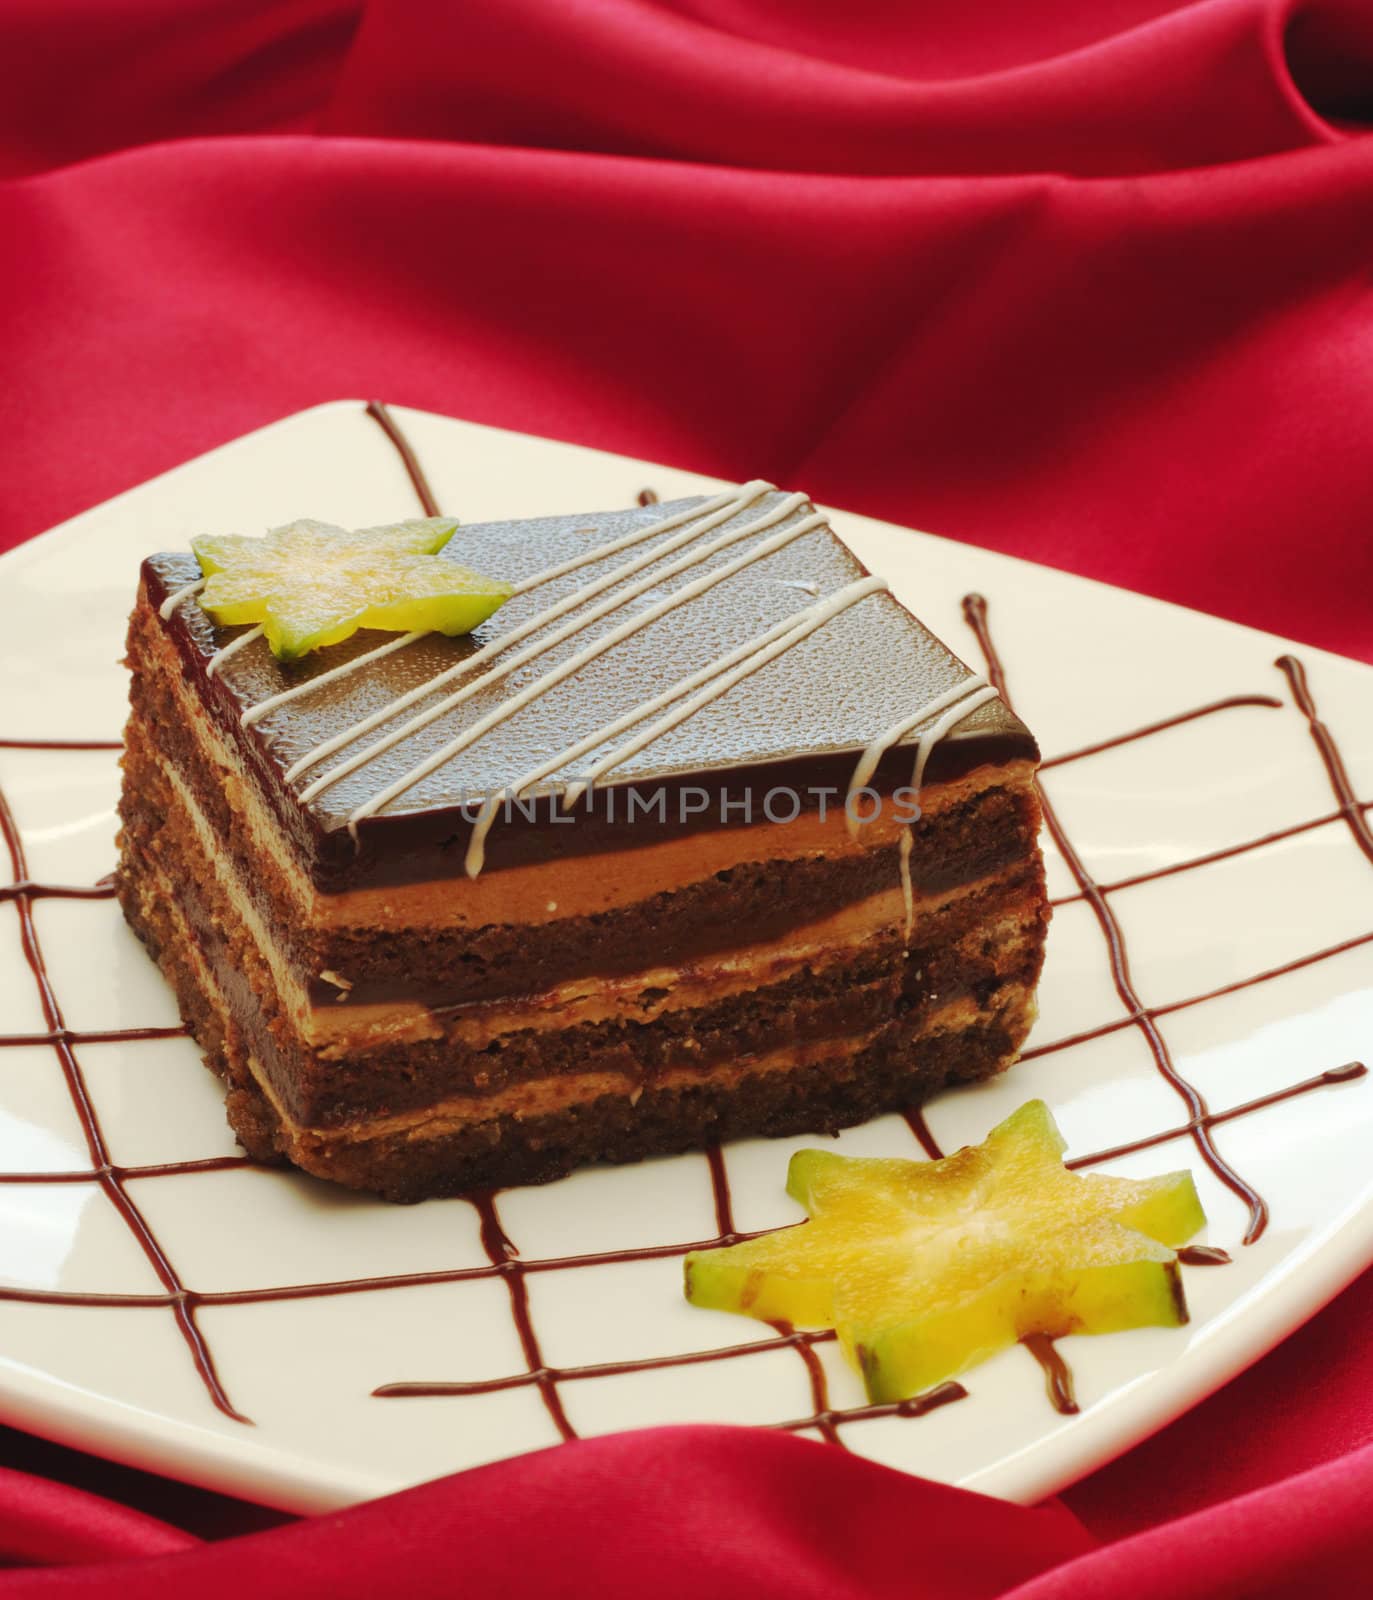 Tiramisu Cake with Carambola by ildi